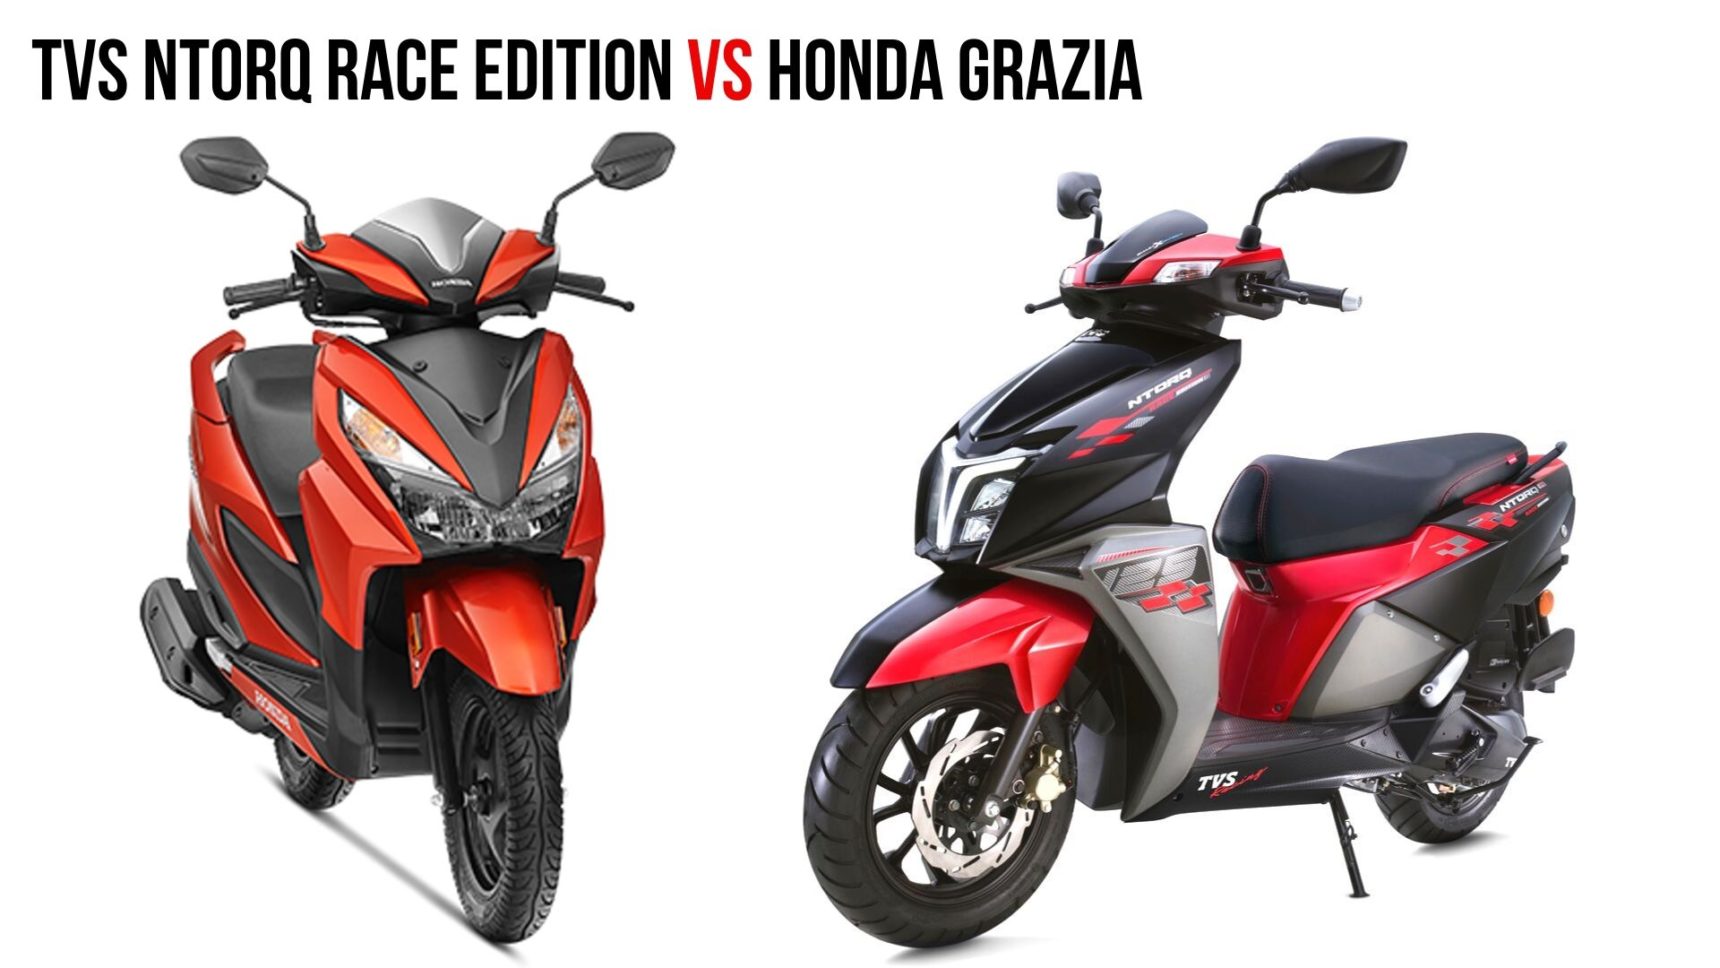 Tvs Ntorq Race Edition Vs Honda Grazia Spec Comparison